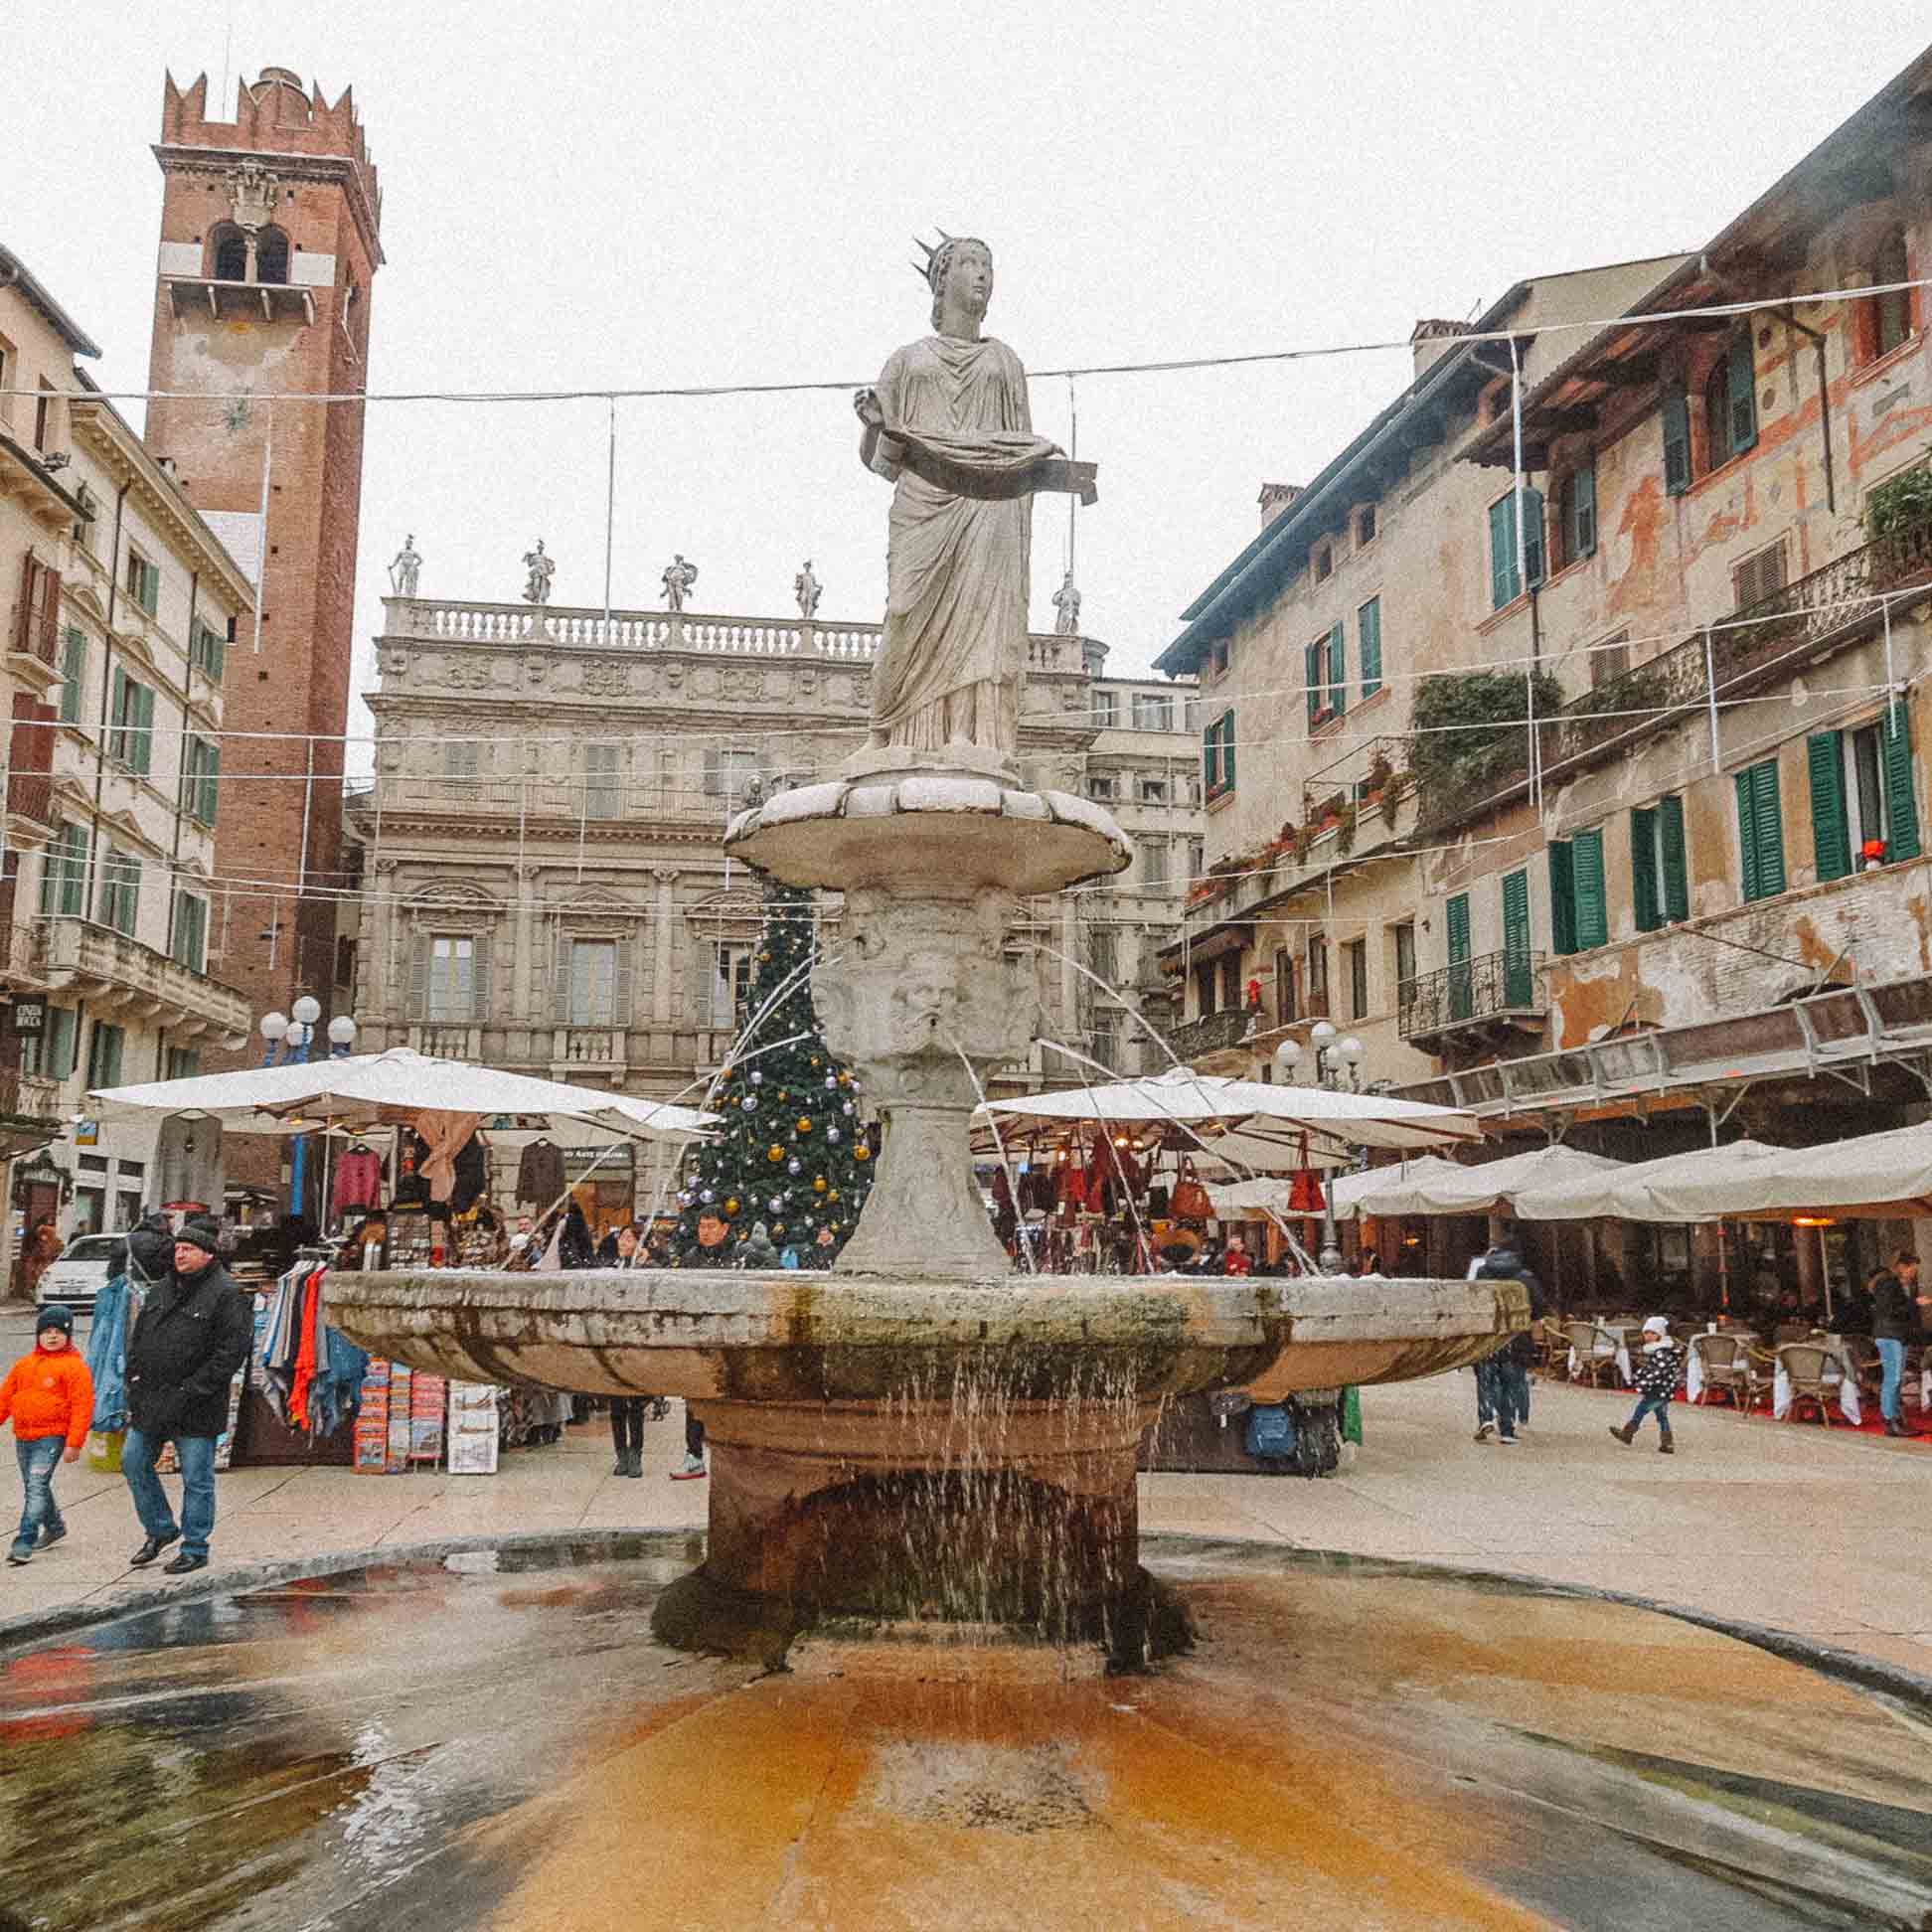 Homenagem à água encanada na Piazza delle Erbe em Verona